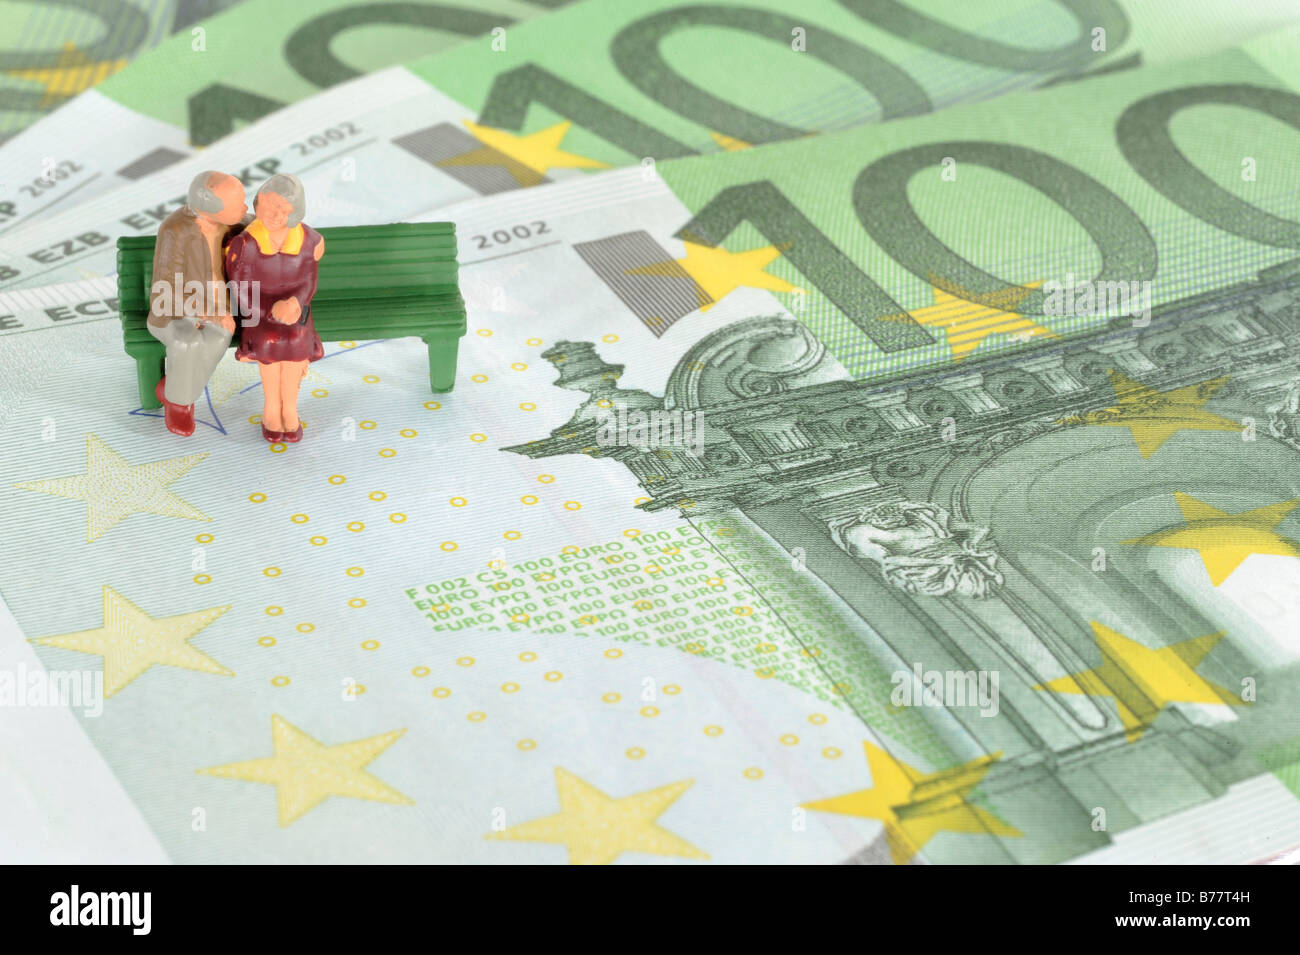 Les figures de deux aînés assis sur les billets en euros, l'image symbolique du régime de pensions de retraite, Banque D'Images